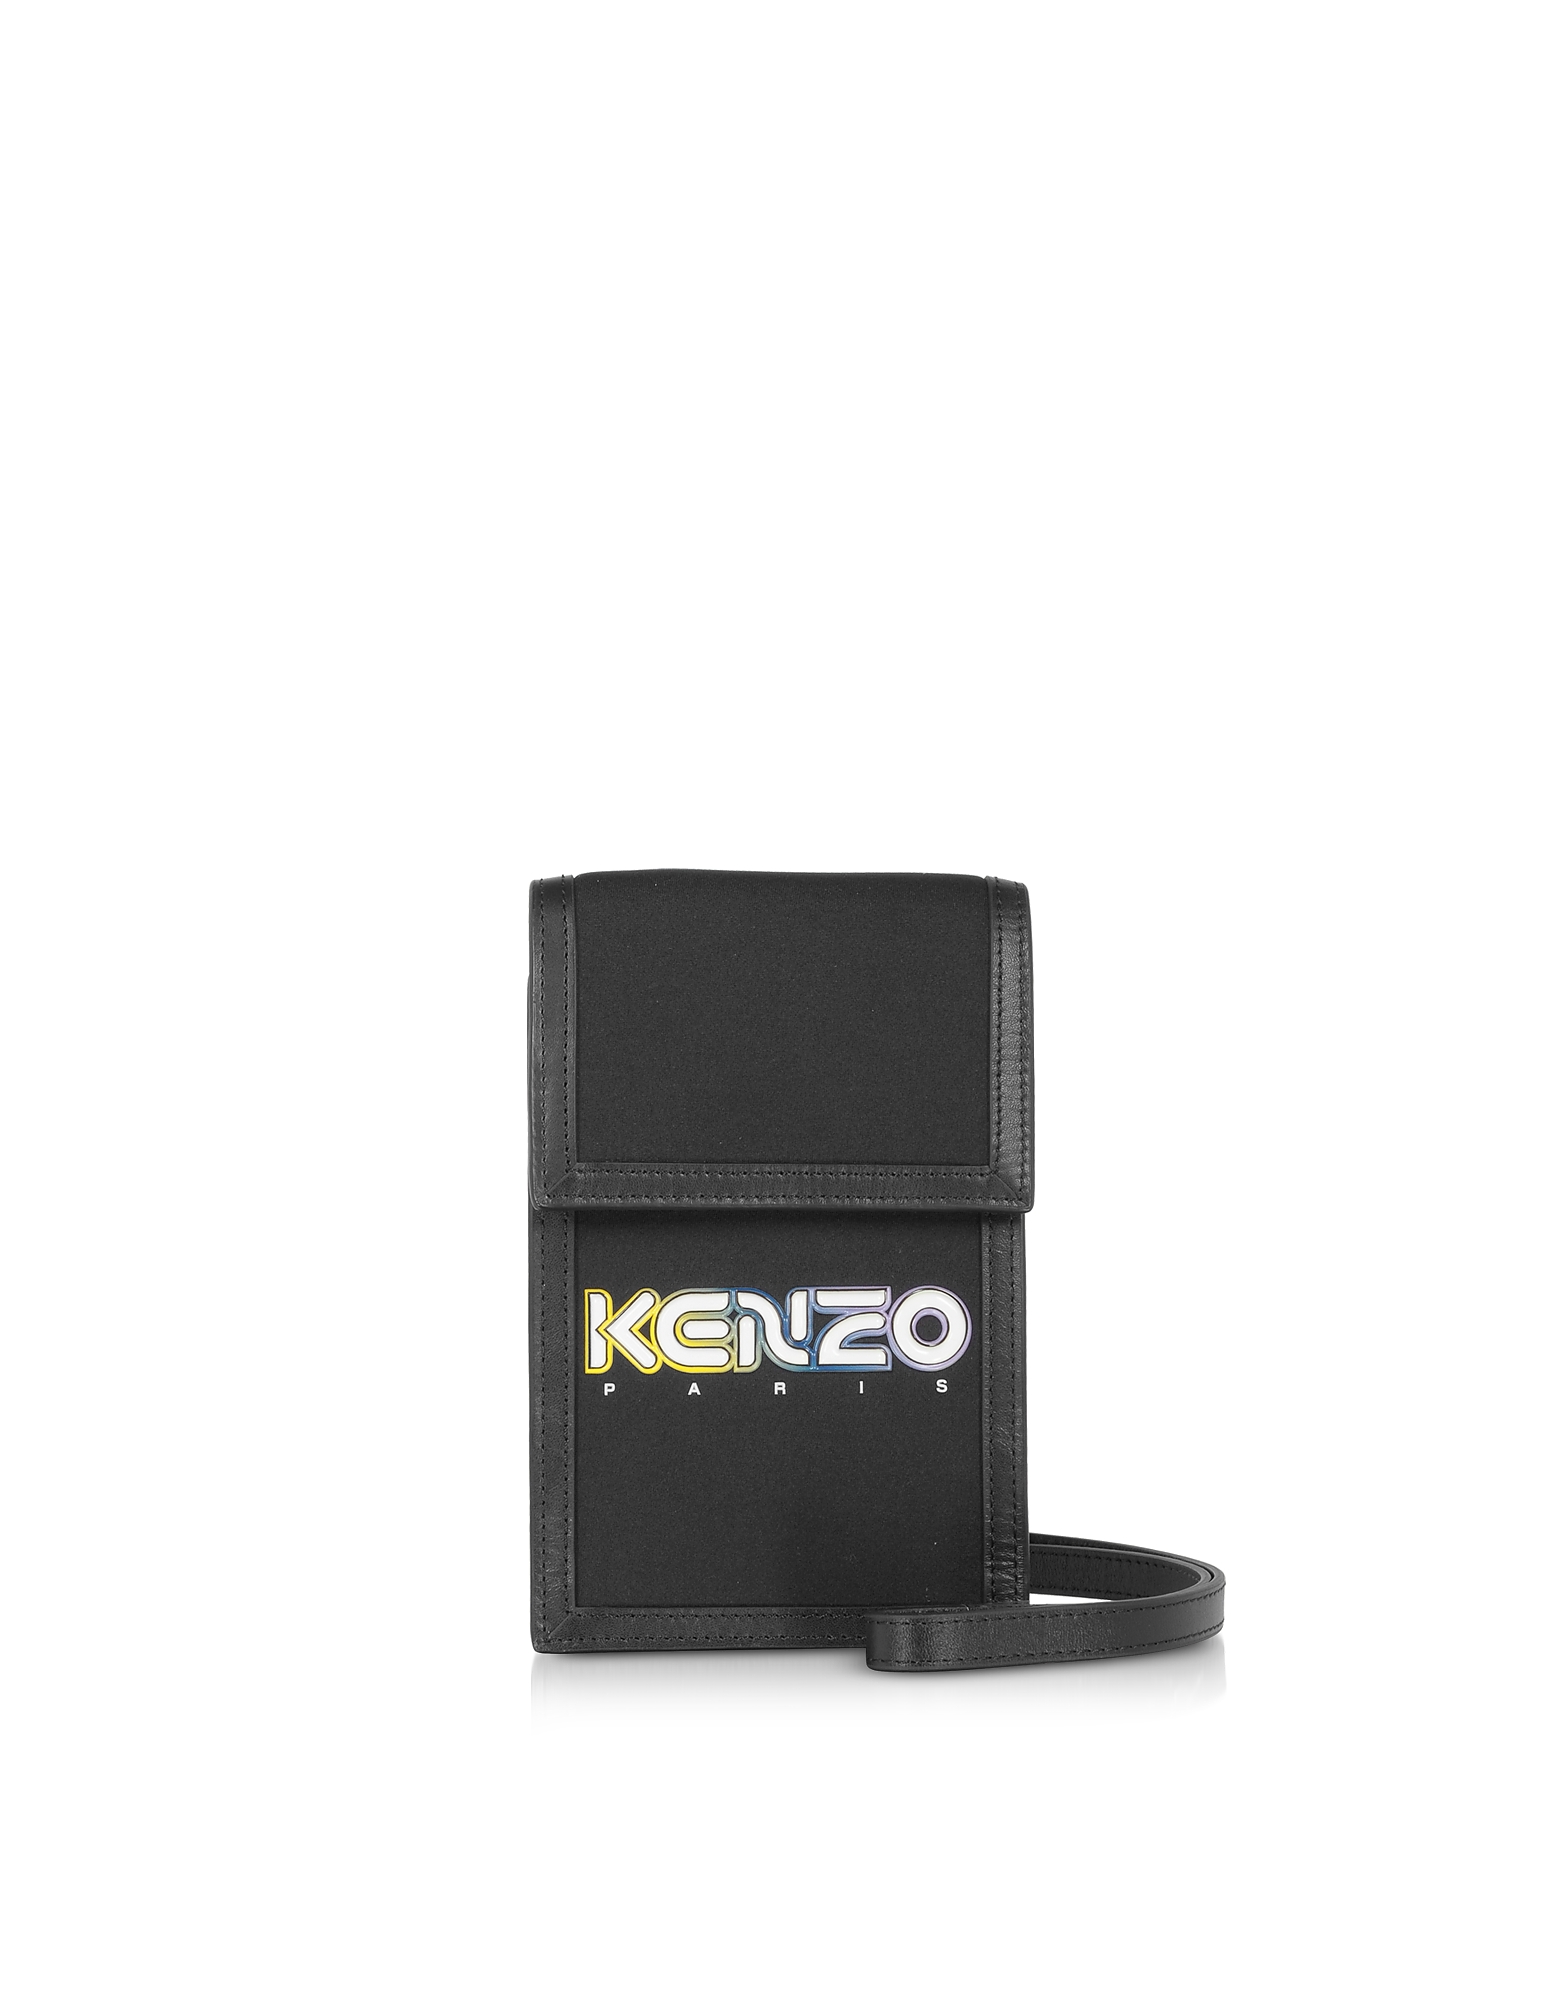 KENZO DESIGNER HANDBAGS BLACK KOMBO PHONE HOLDER ON STRAP